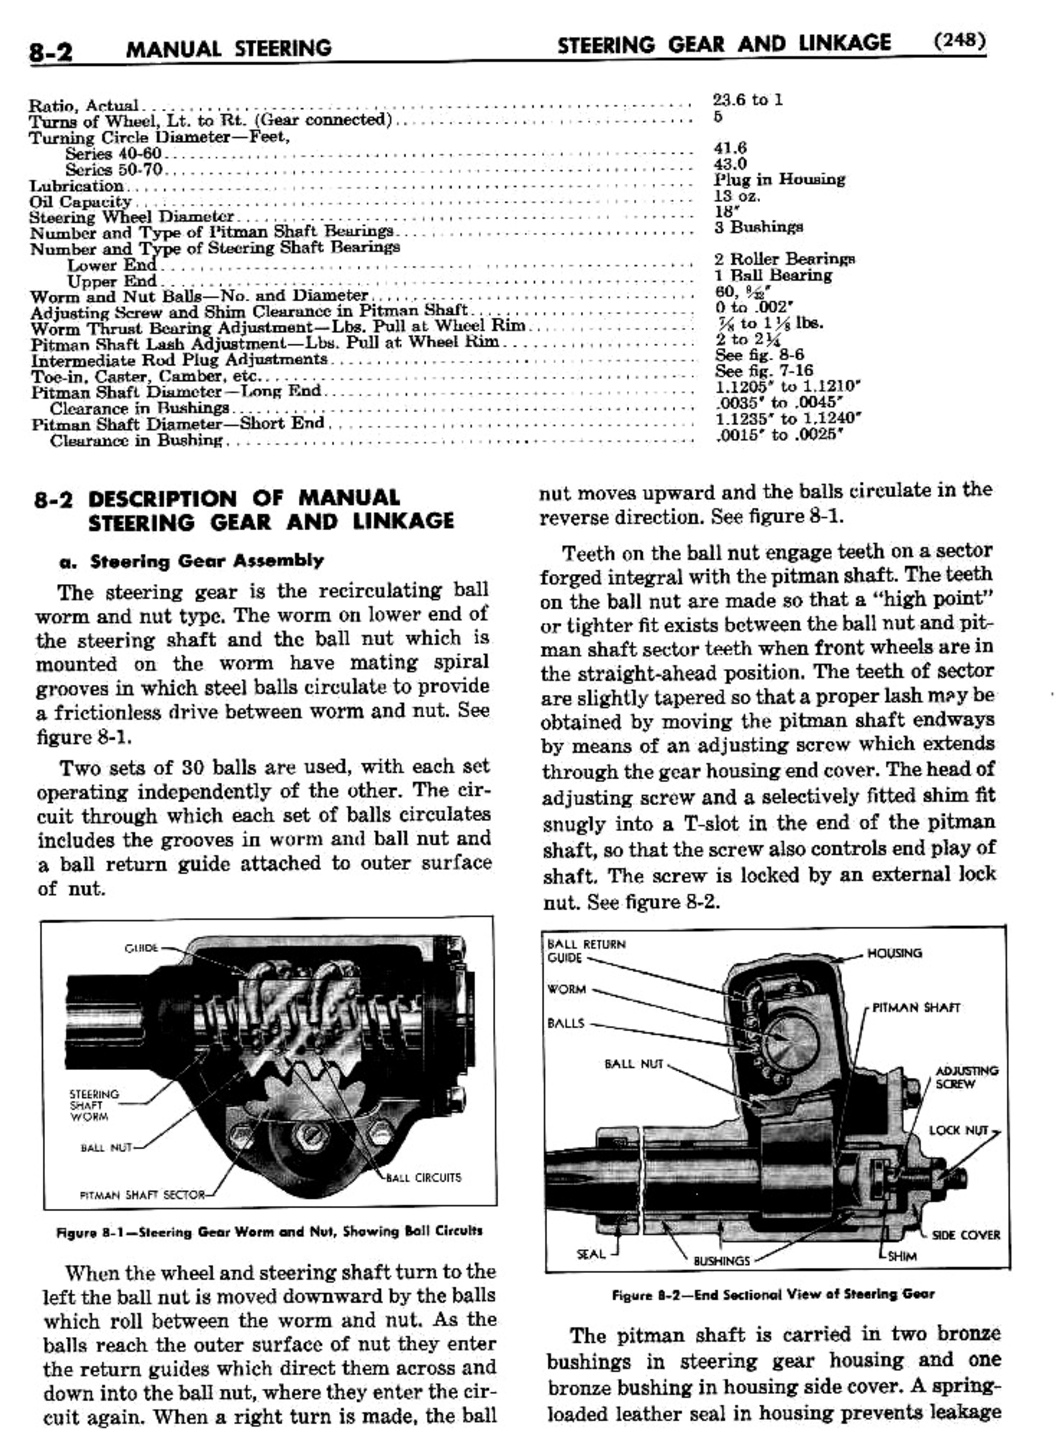 n_09 1955 Buick Shop Manual - Steering-002-002.jpg